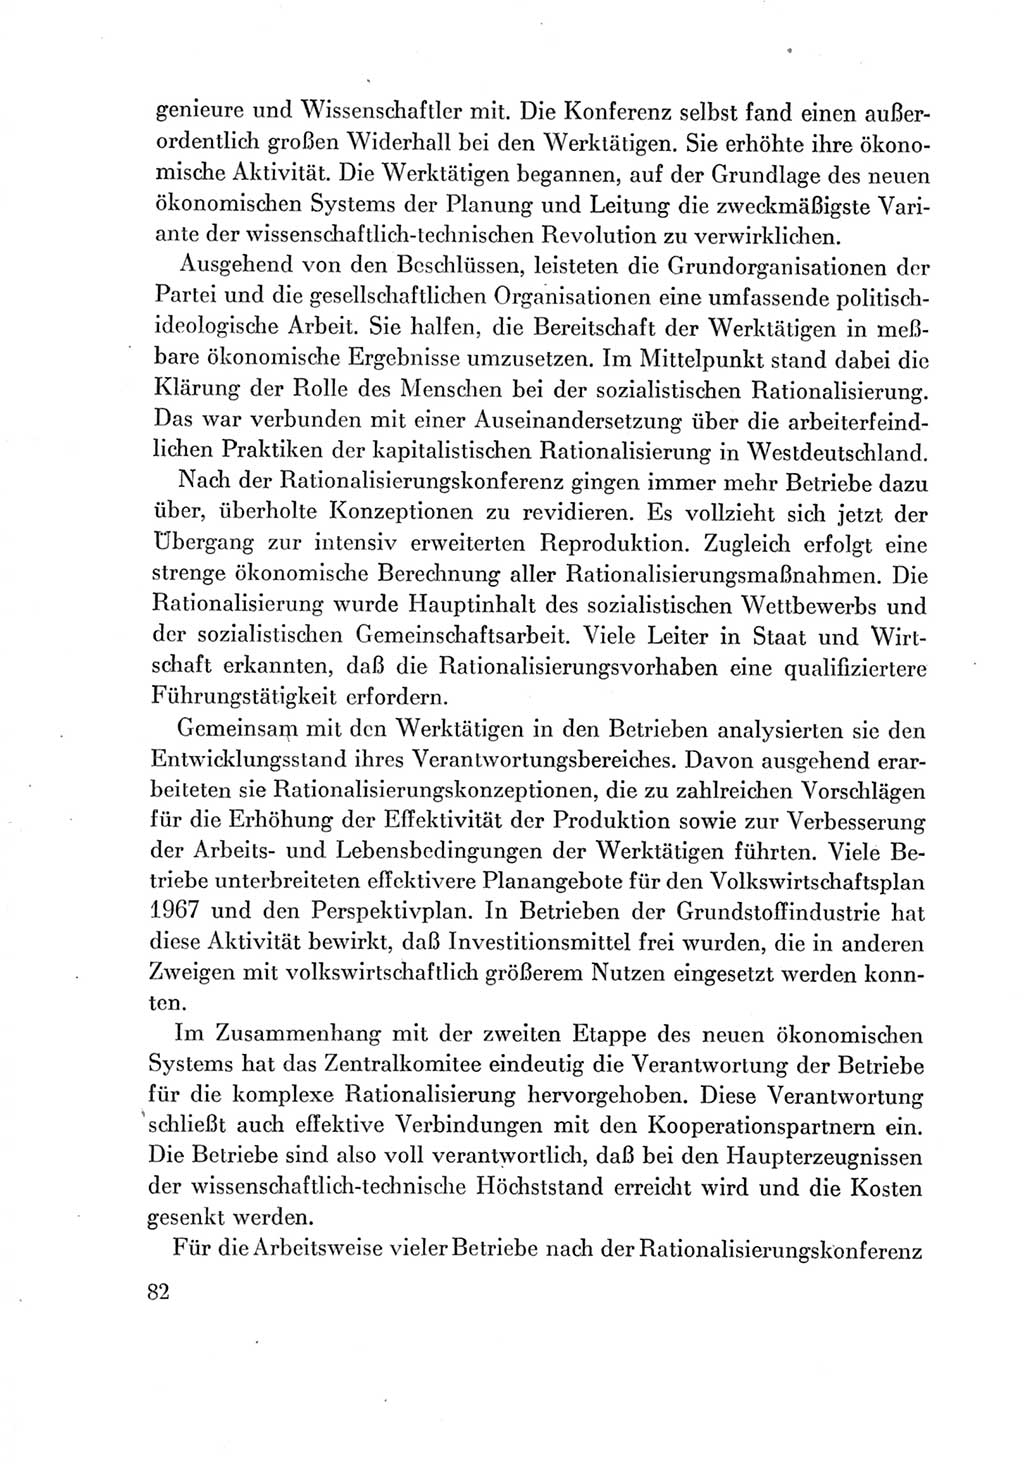 Protokoll der Verhandlungen des Ⅶ. Parteitages der Sozialistischen Einheitspartei Deutschlands (SED) [Deutsche Demokratische Republik (DDR)] 1967, Band Ⅳ, Seite 82 (Prot. Verh. Ⅶ. PT SED DDR 1967, Bd. Ⅳ, S. 82)